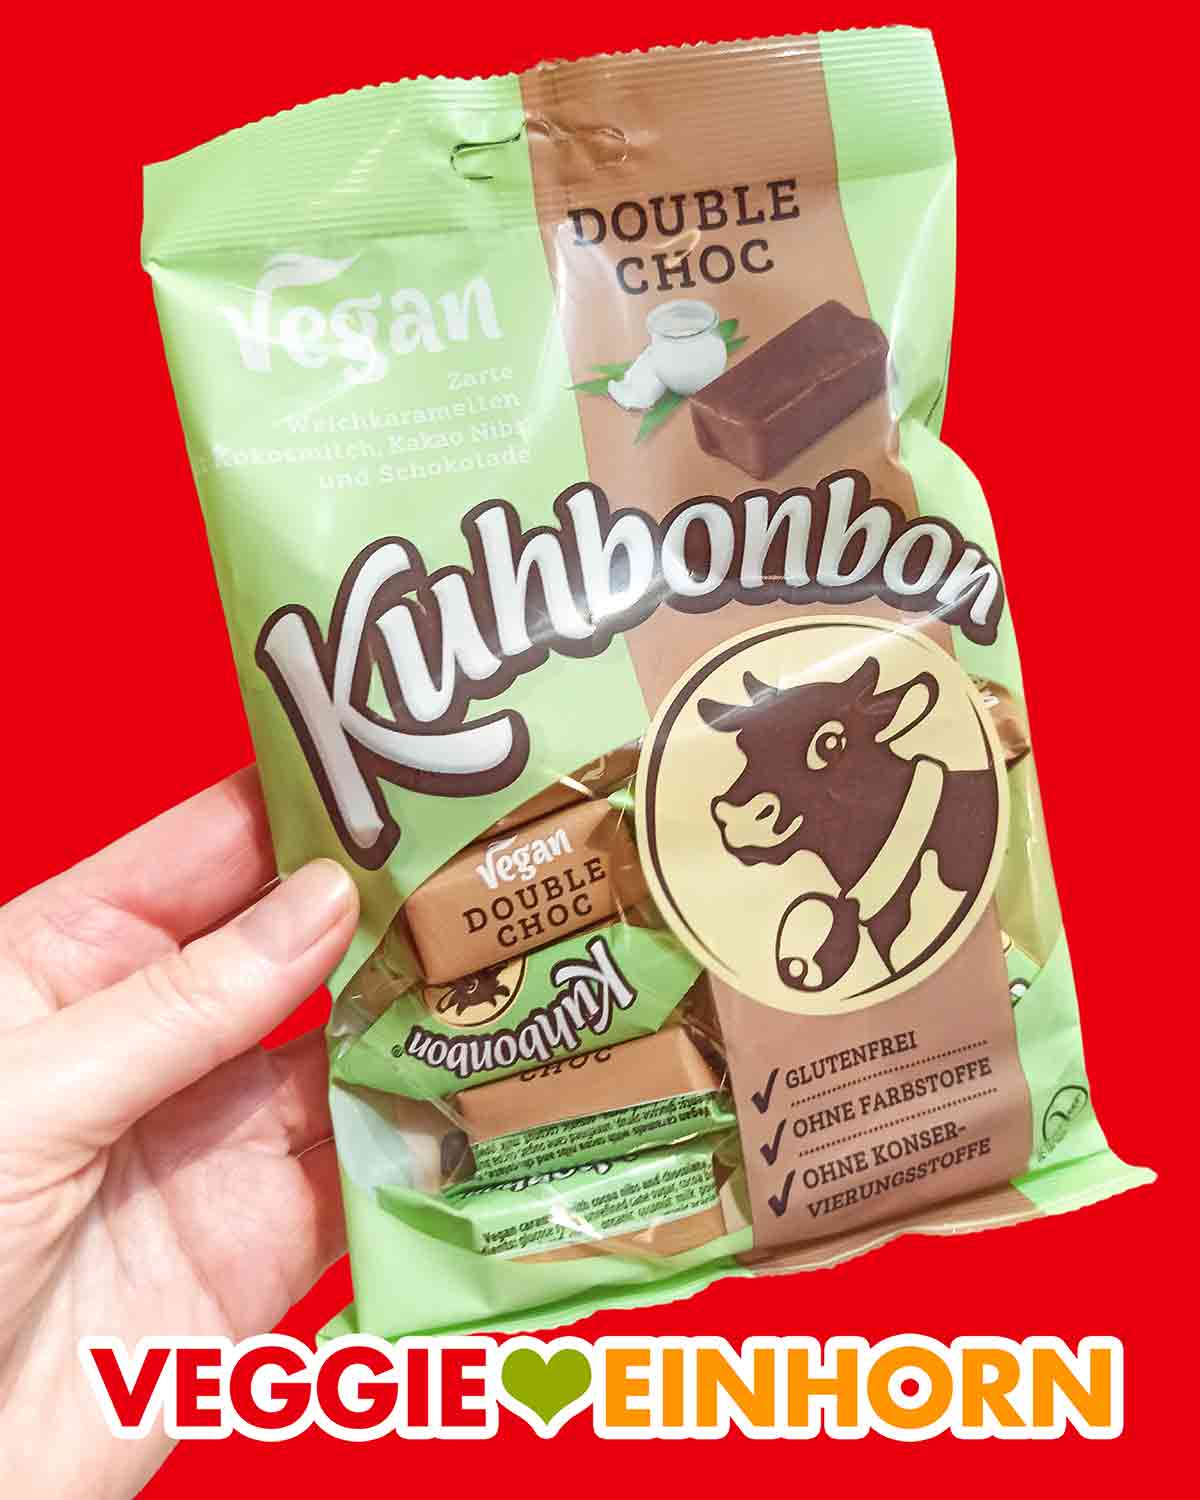 Double Choc Vegane Kuhbonbons